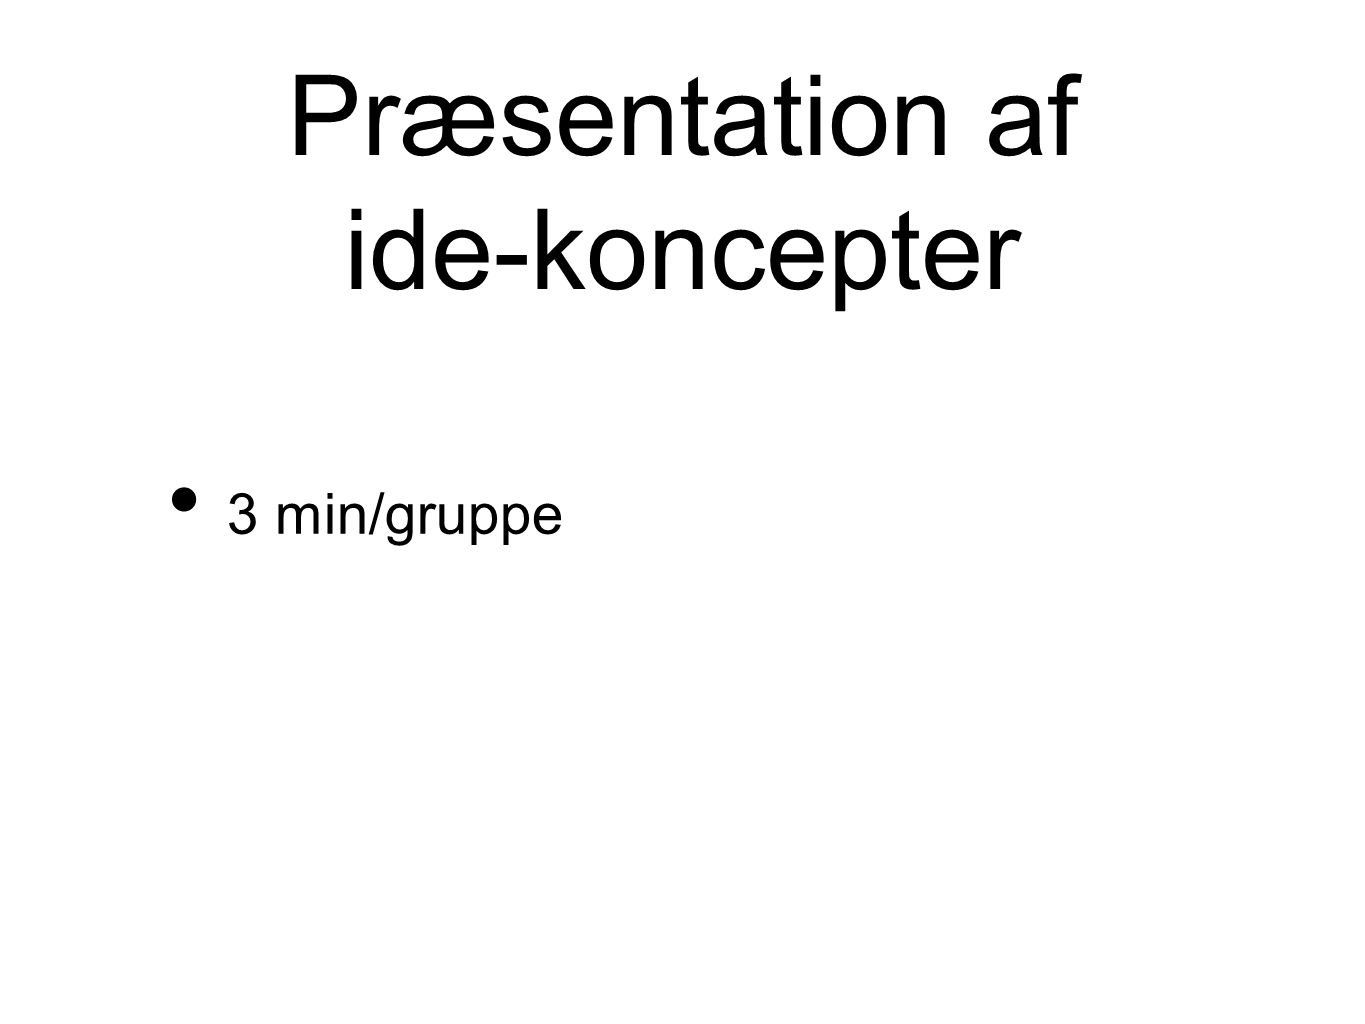 Præsentation af ide-koncepter 3 min/gruppe